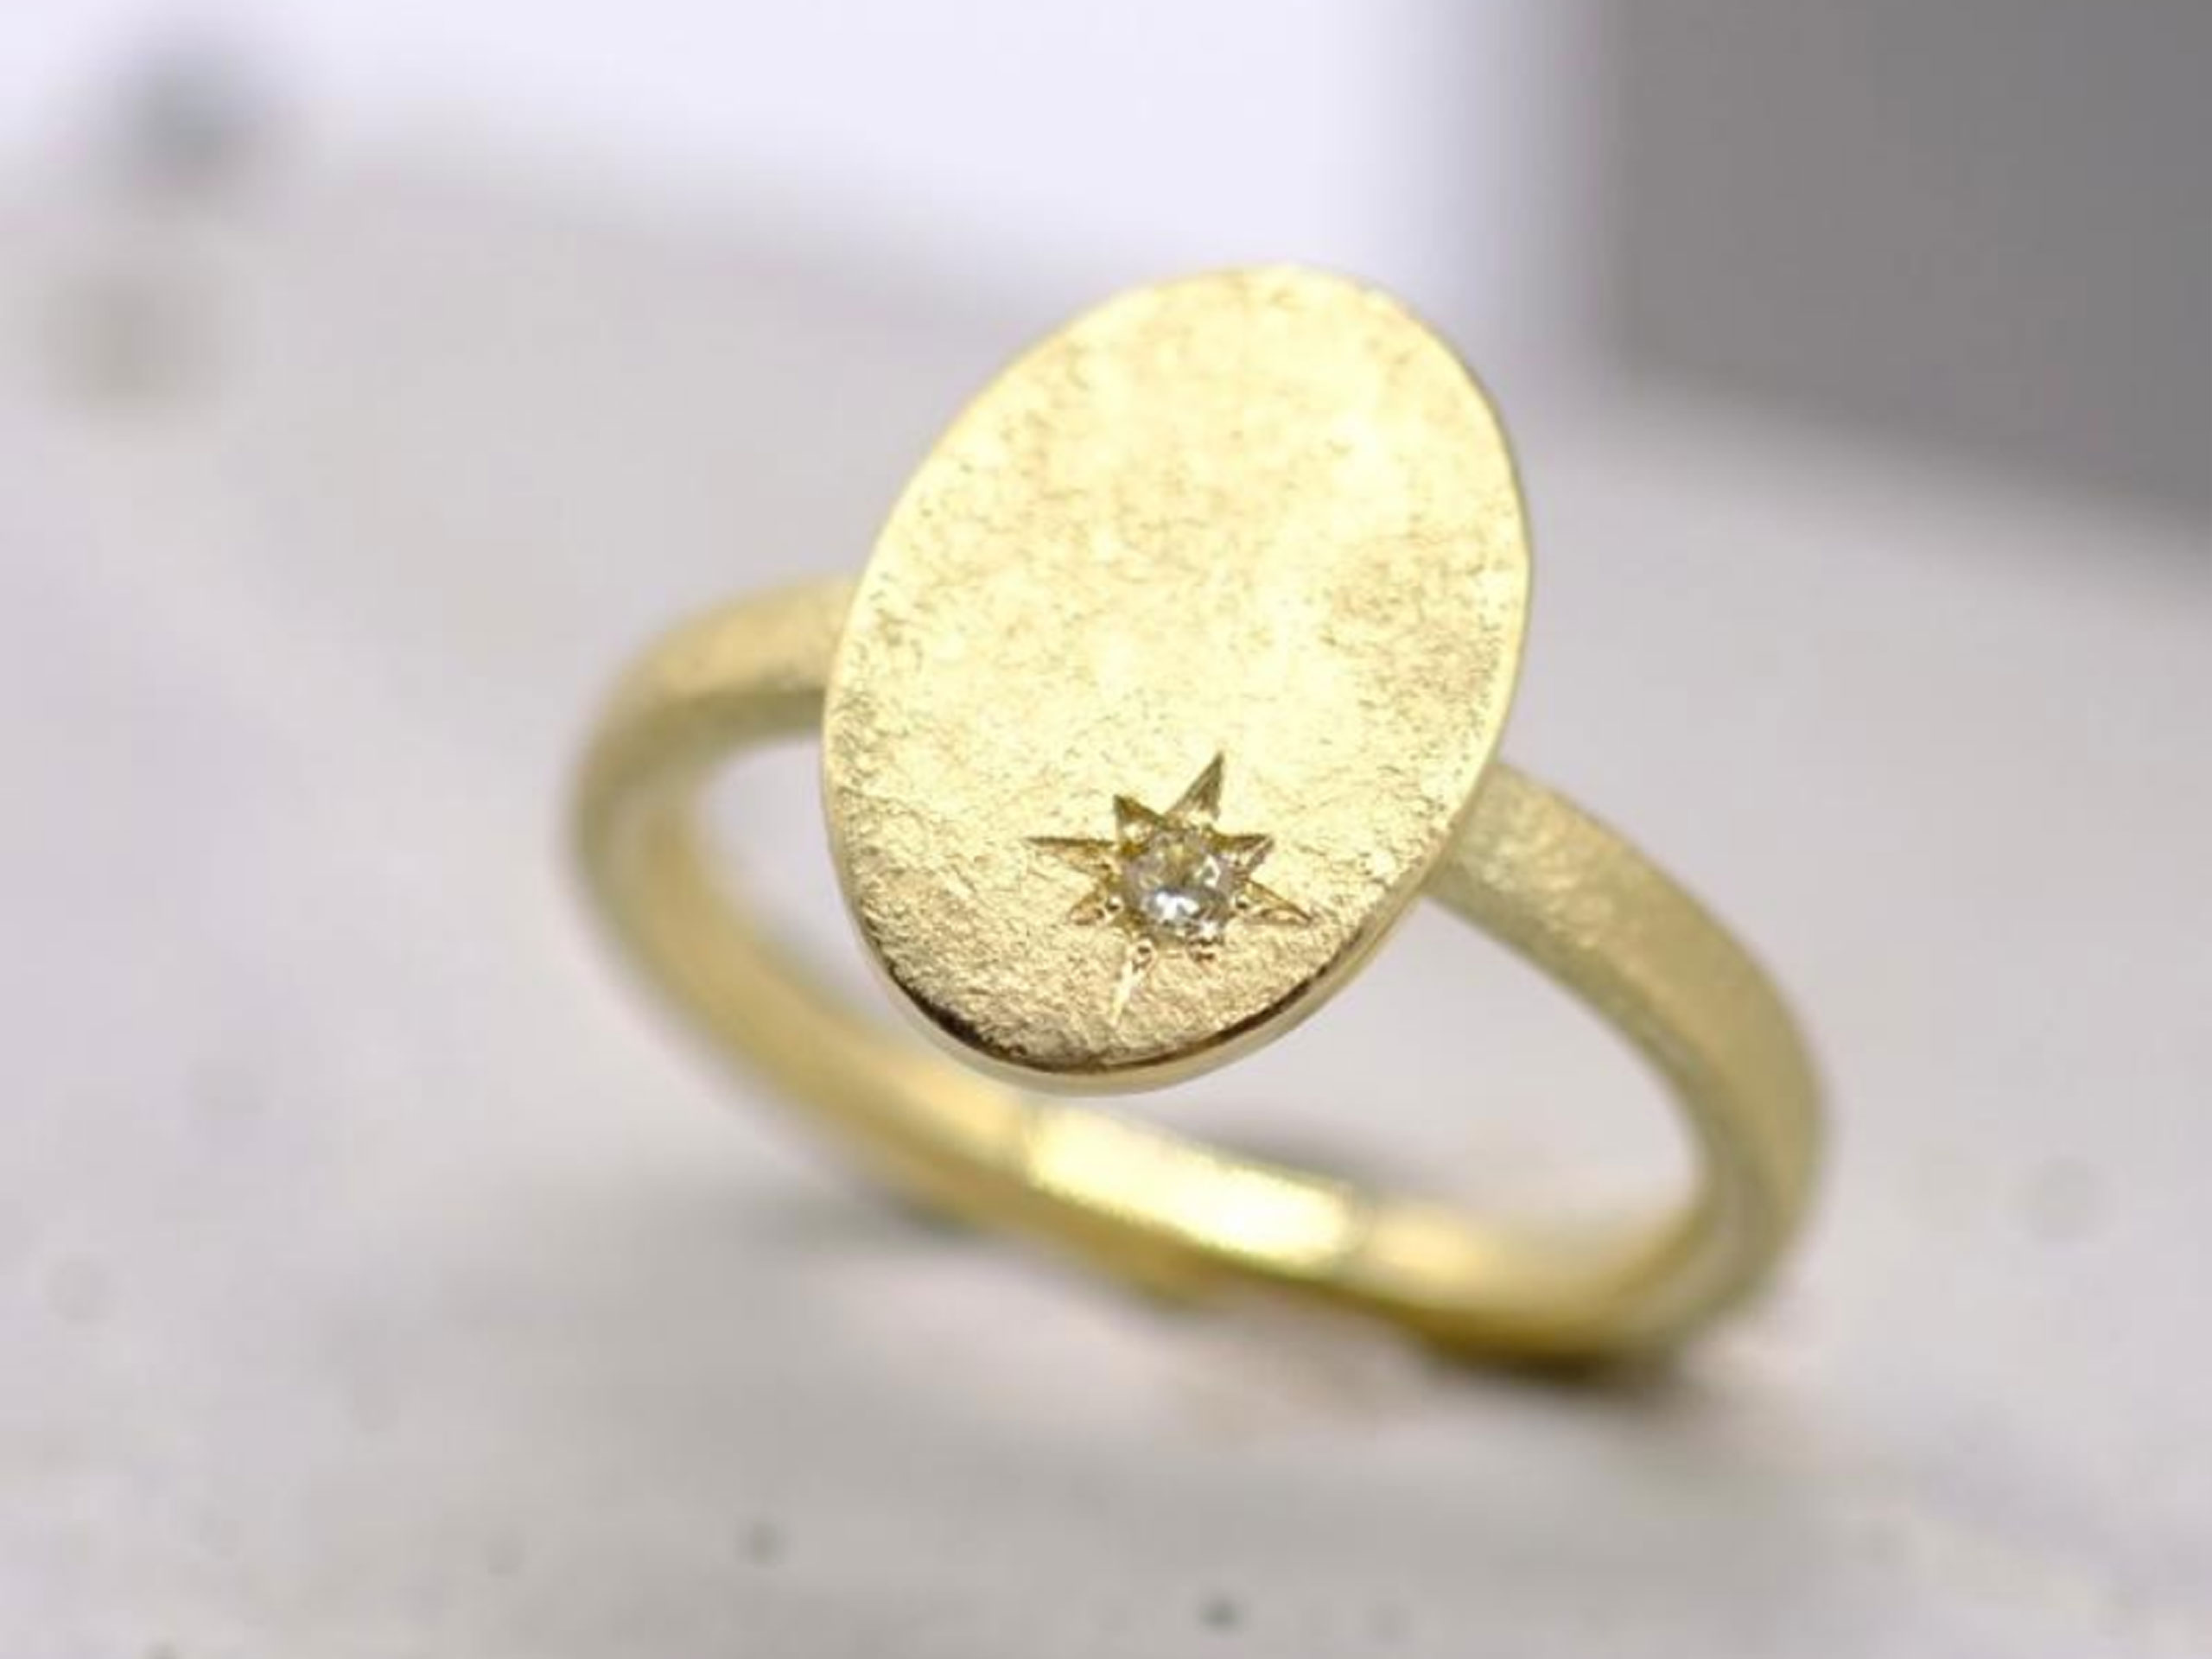 Goldener Ring mit Stern und Stein